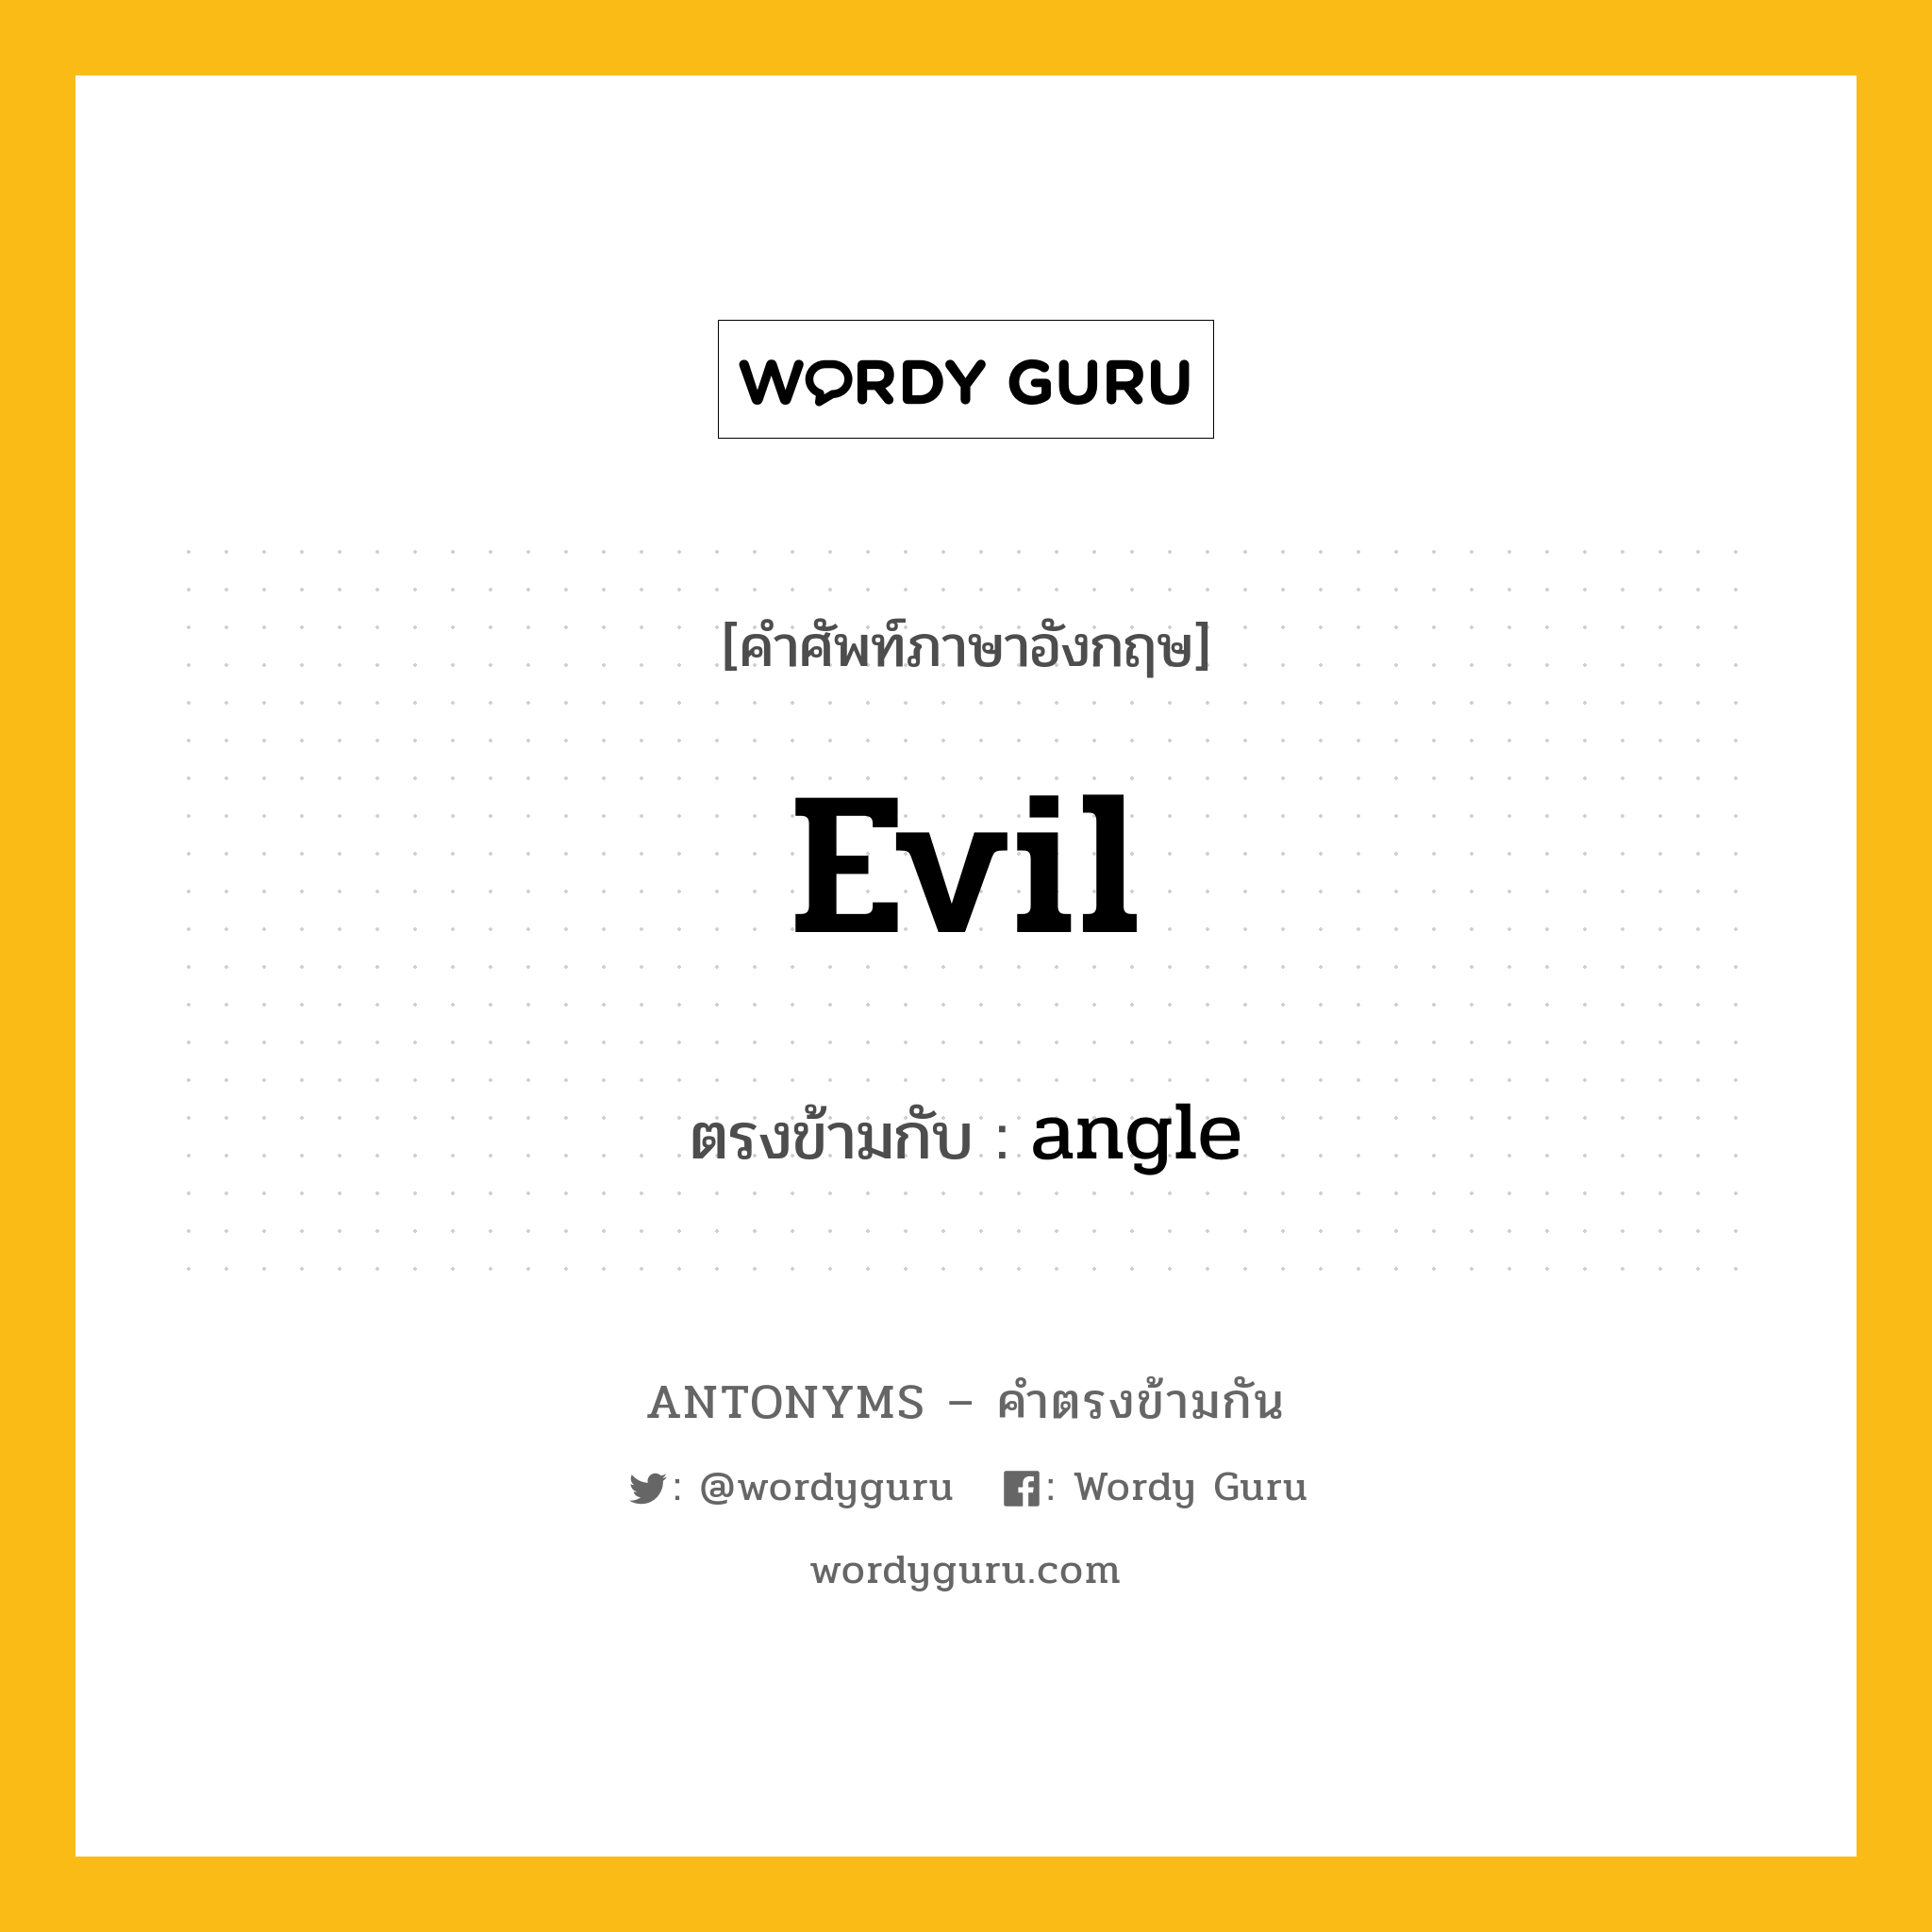 evil เป็นคำตรงข้ามกับคำไหนบ้าง?, คำศัพท์ภาษาอังกฤษ evil ตรงข้ามกับ angle หมวด angle